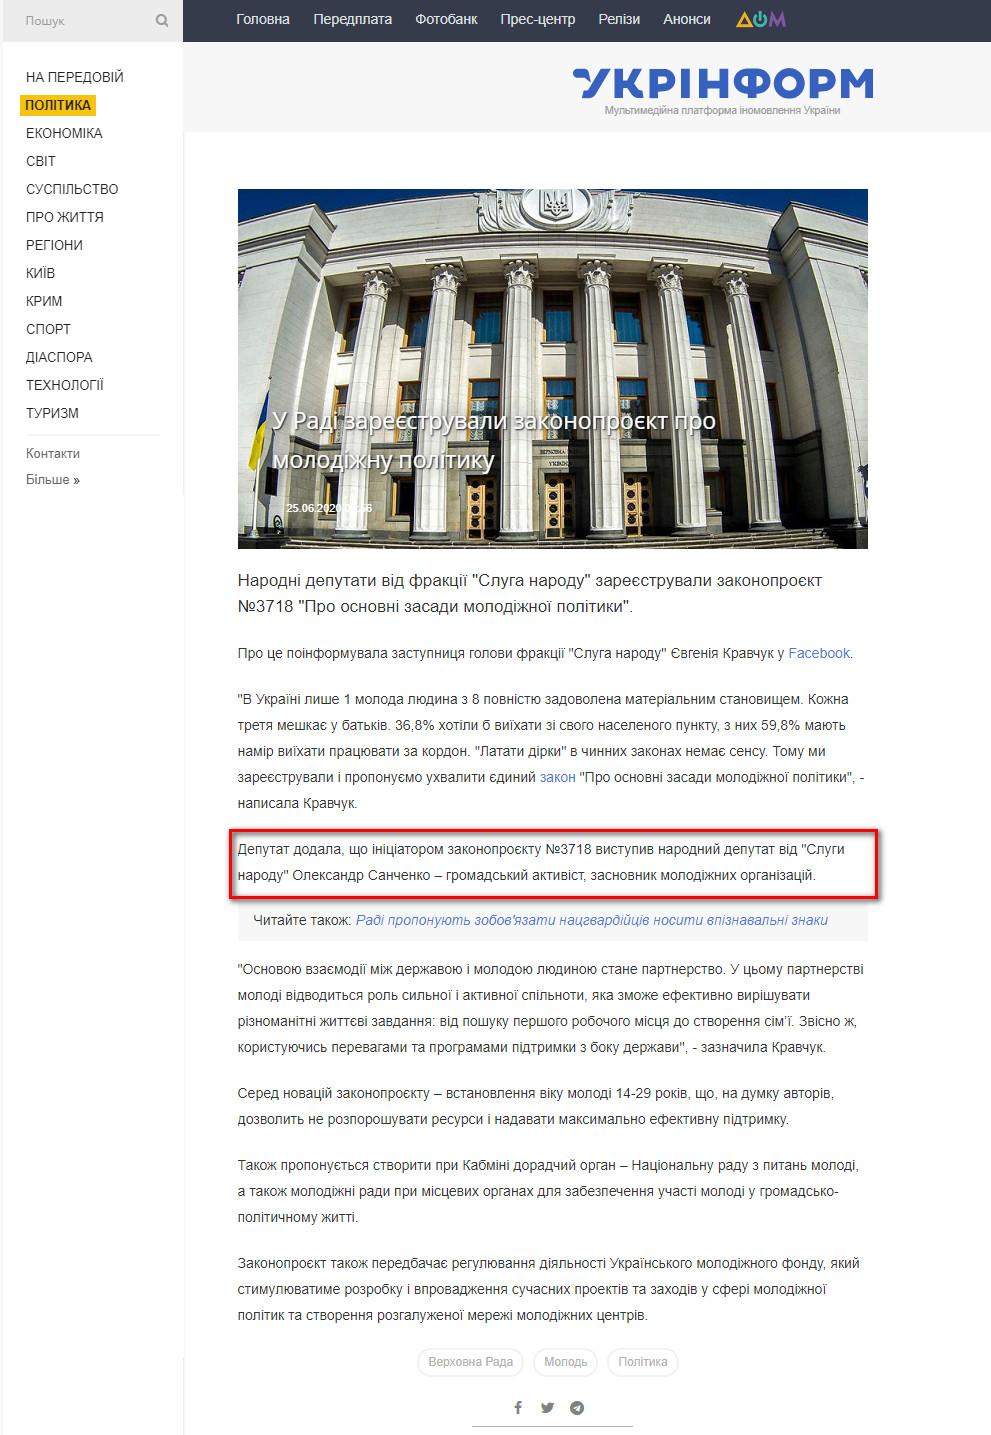 https://www.ukrinform.ua/rubric-polytics/3051476-u-radi-zareestruvali-zakonoproekt-pro-molodiznu-politiku.html